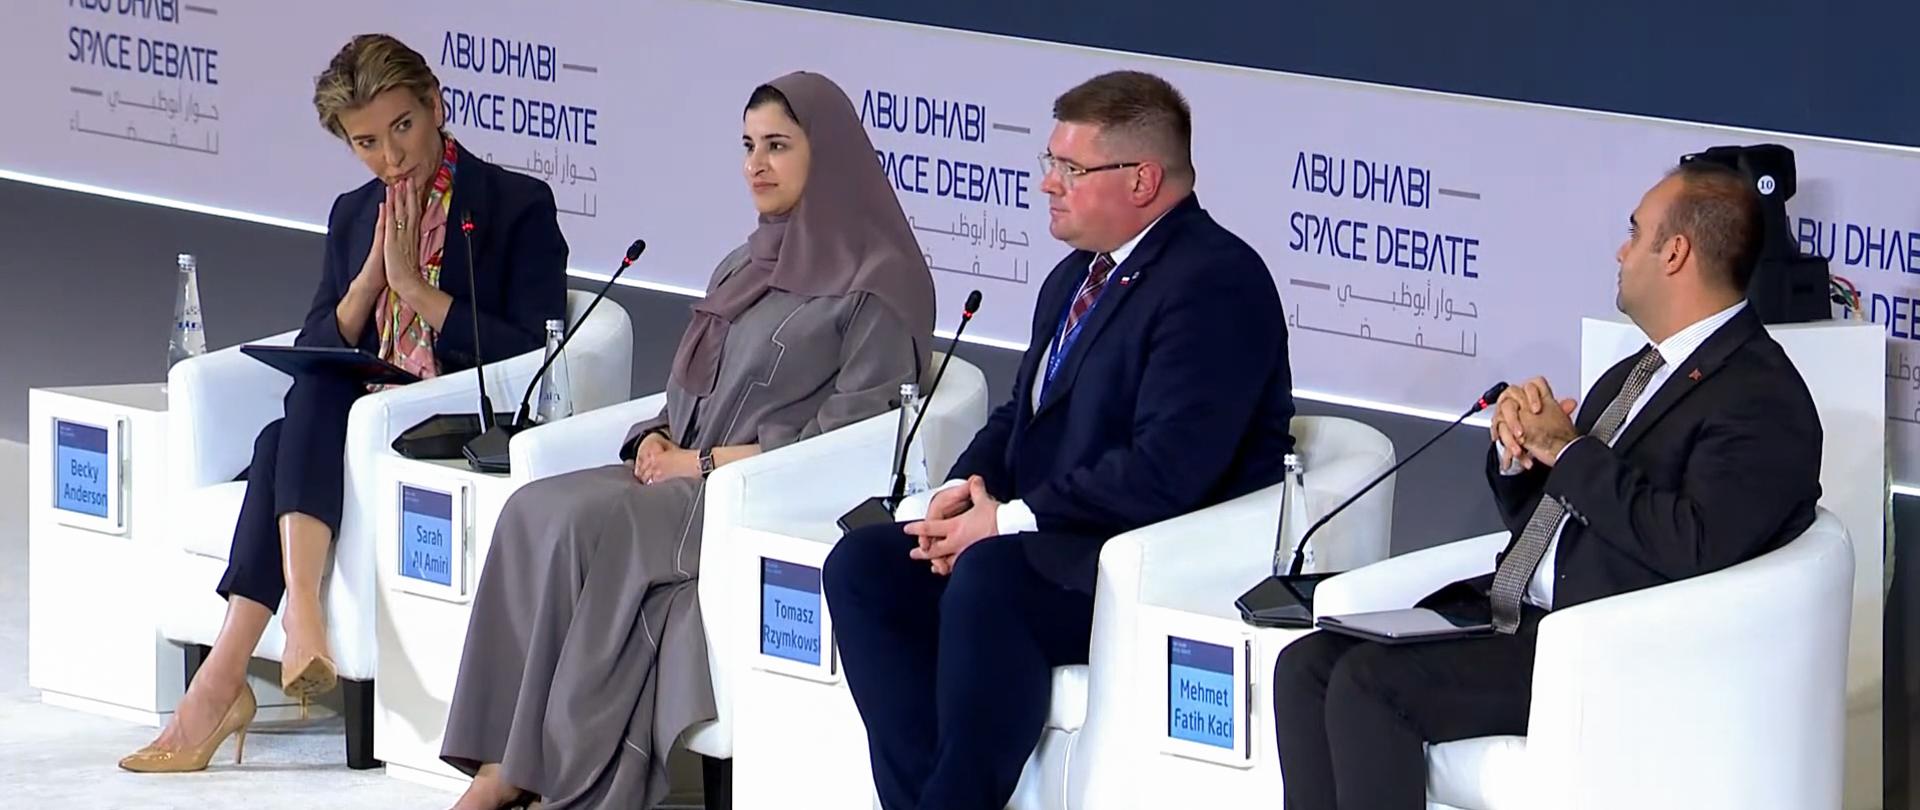 Dwie kobiety, jedna w szarym hidżabie, druga w granatowym ubraniu, i dwóch mężczyzn w garniturach siedzi na białych fotelach w rzędzie.